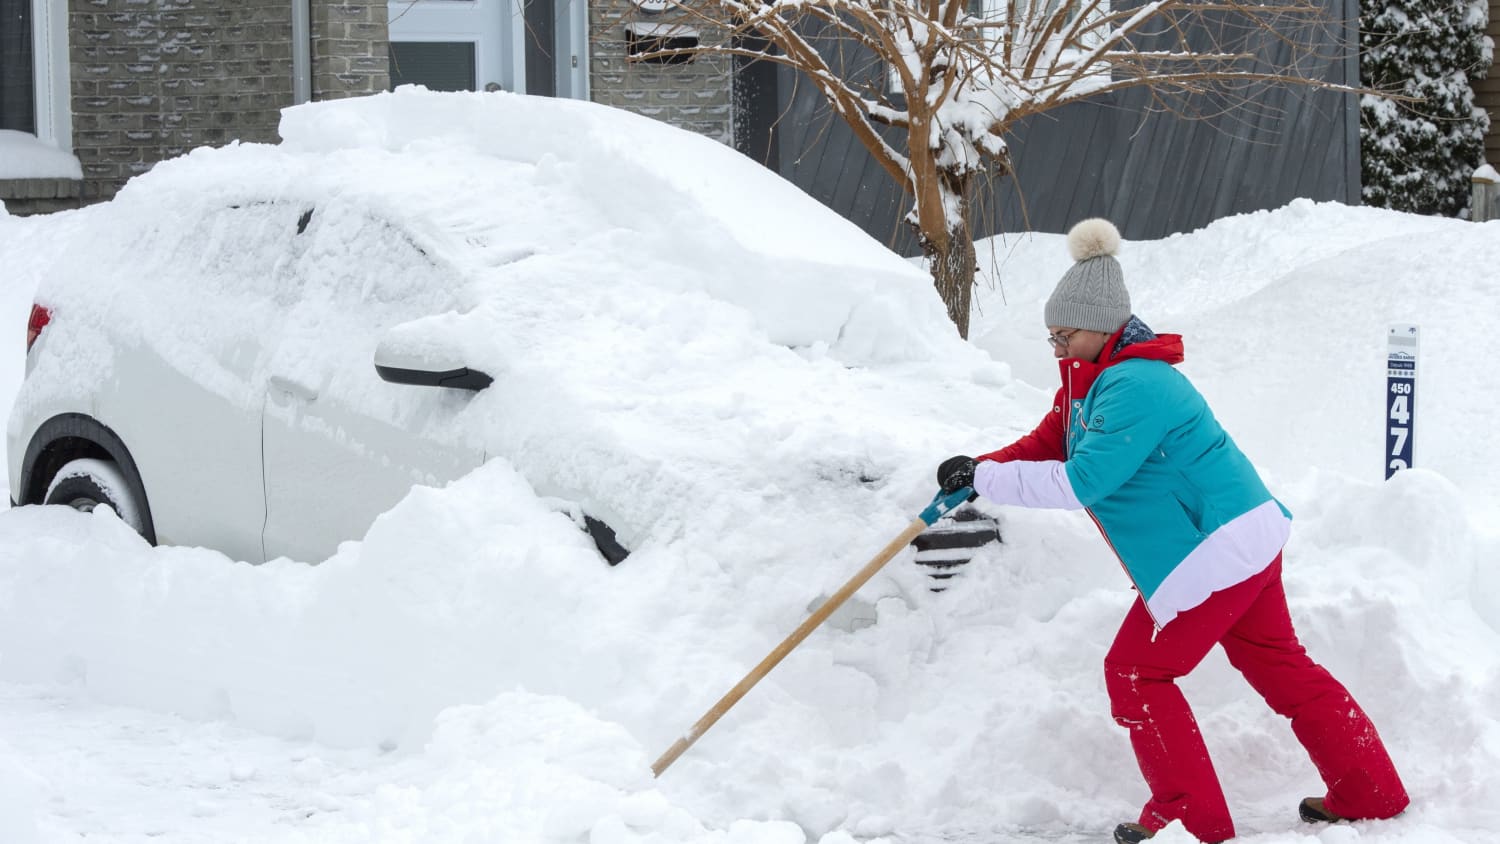 Auto im Winter: Tür eingefroren, Batterie schwach, Fenster beschlagen –  Probleme und ihre Lösungen